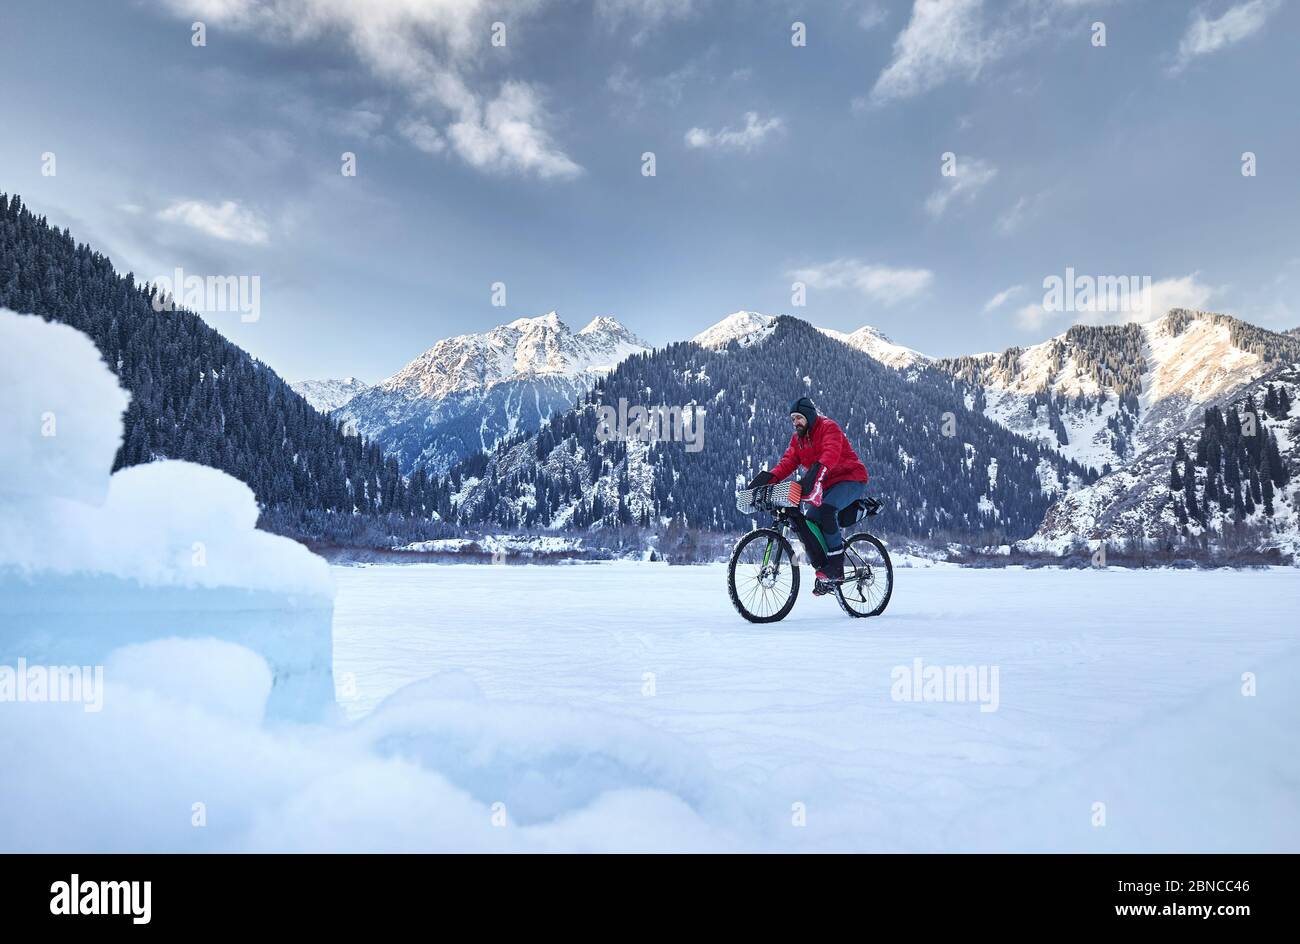 Der Mann in roter Jacke fährt mit seinem Fahrrad am gefrorenen See in verschneiten Bergen im Hintergrund Stockfoto